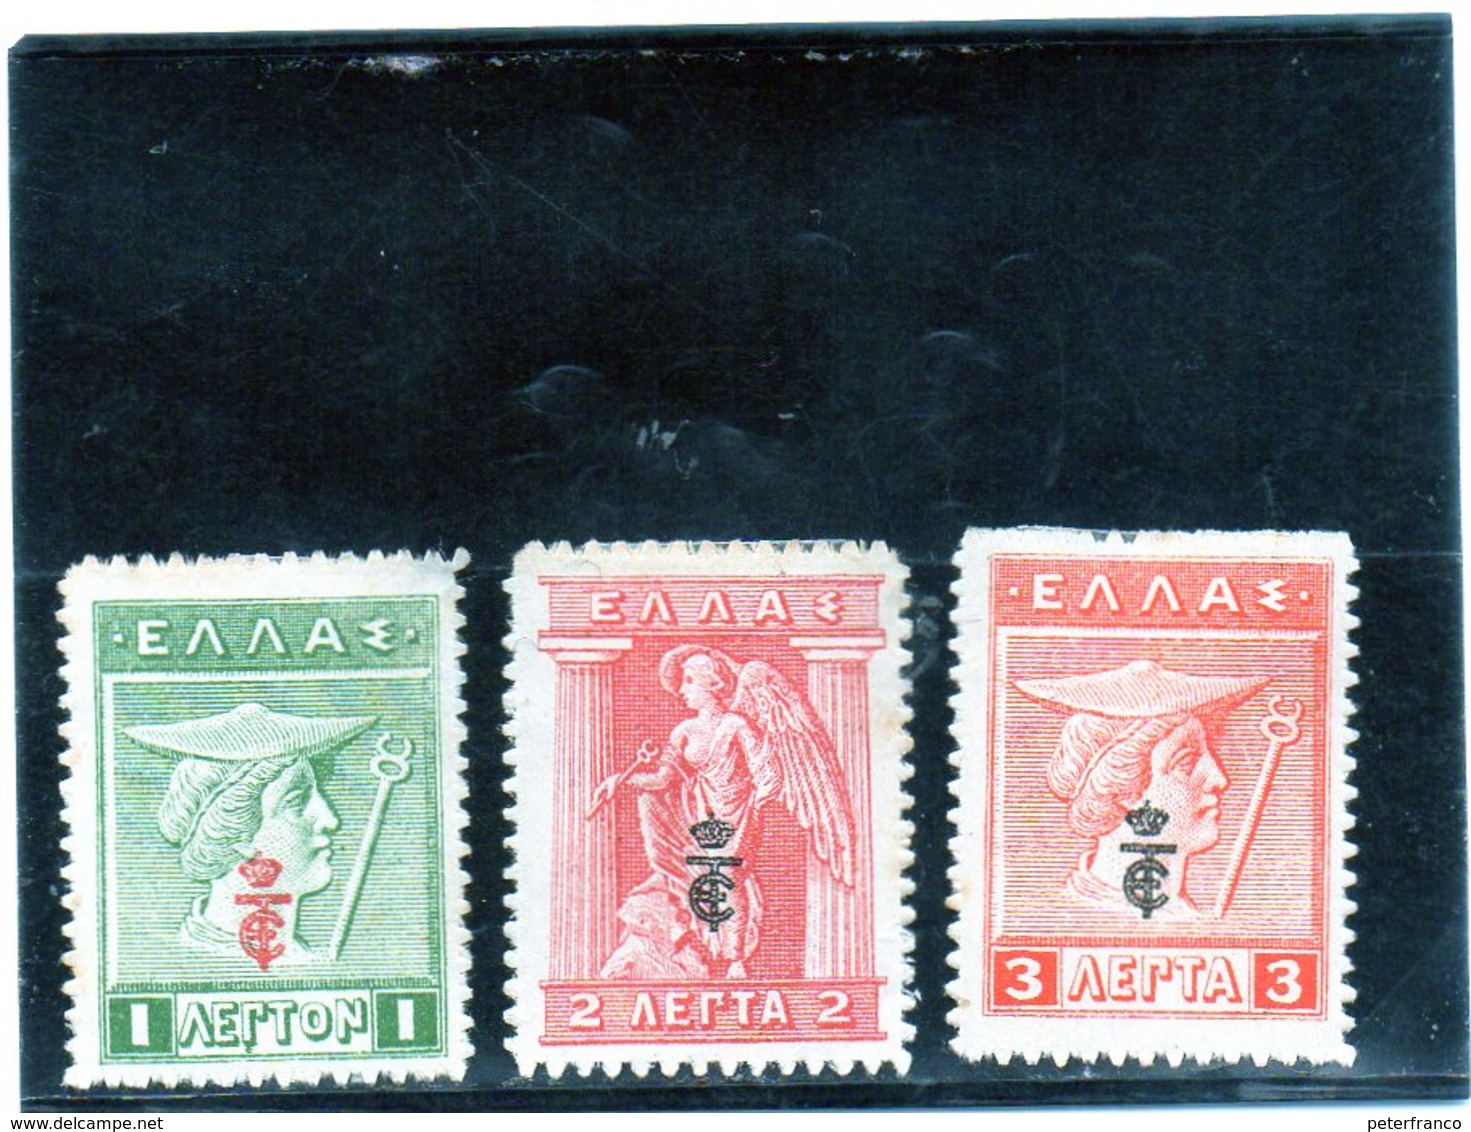 B - 1916 Grecia - Ermes - Soprastampa ET - (linguellati) - Unused Stamps